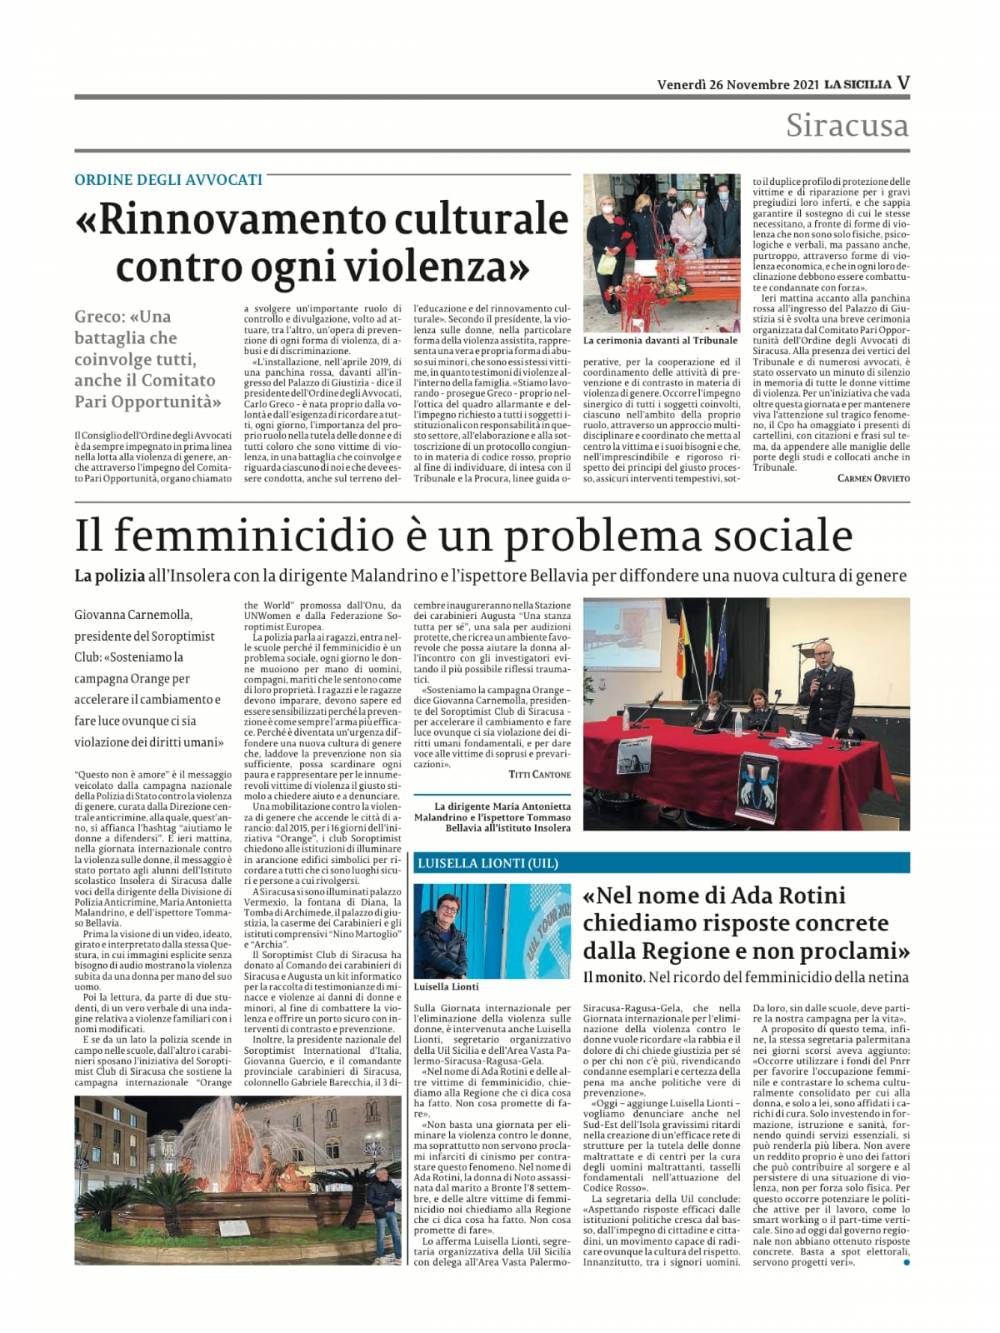 Pagina del giornale la Sicilia del 26 novembre 2021